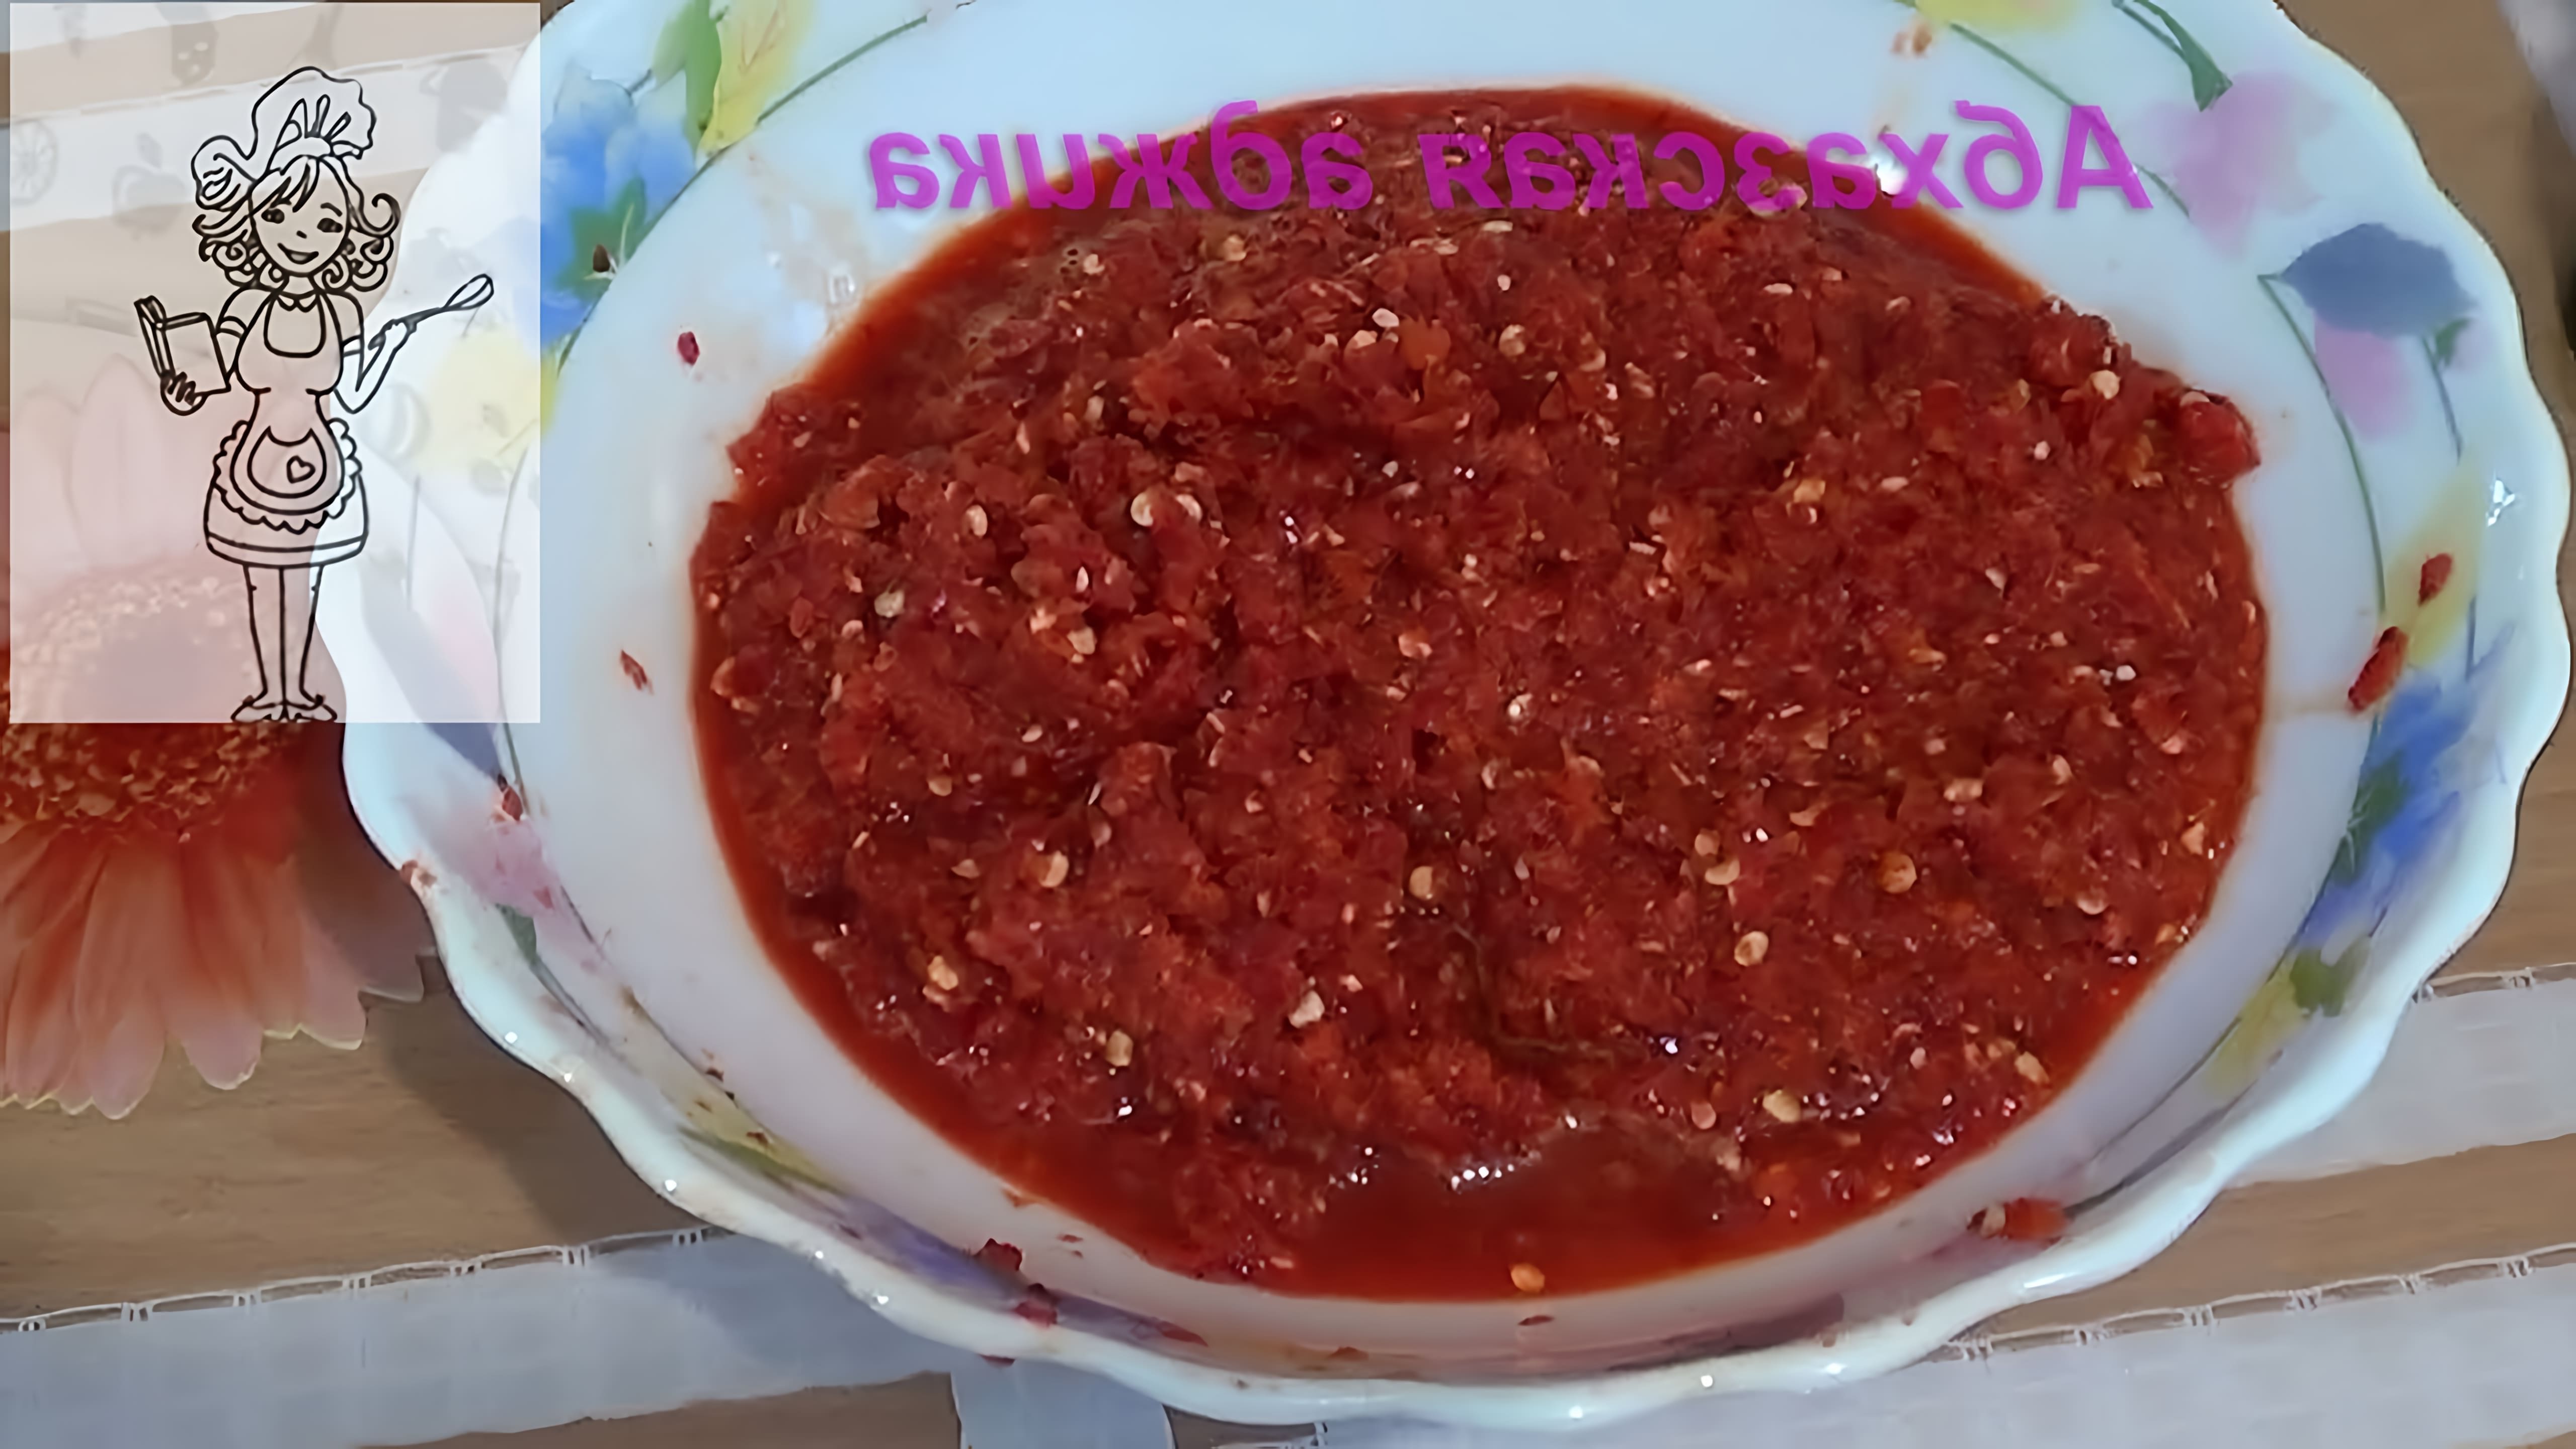 Абхазская аджика, рецепт из острого красного перца